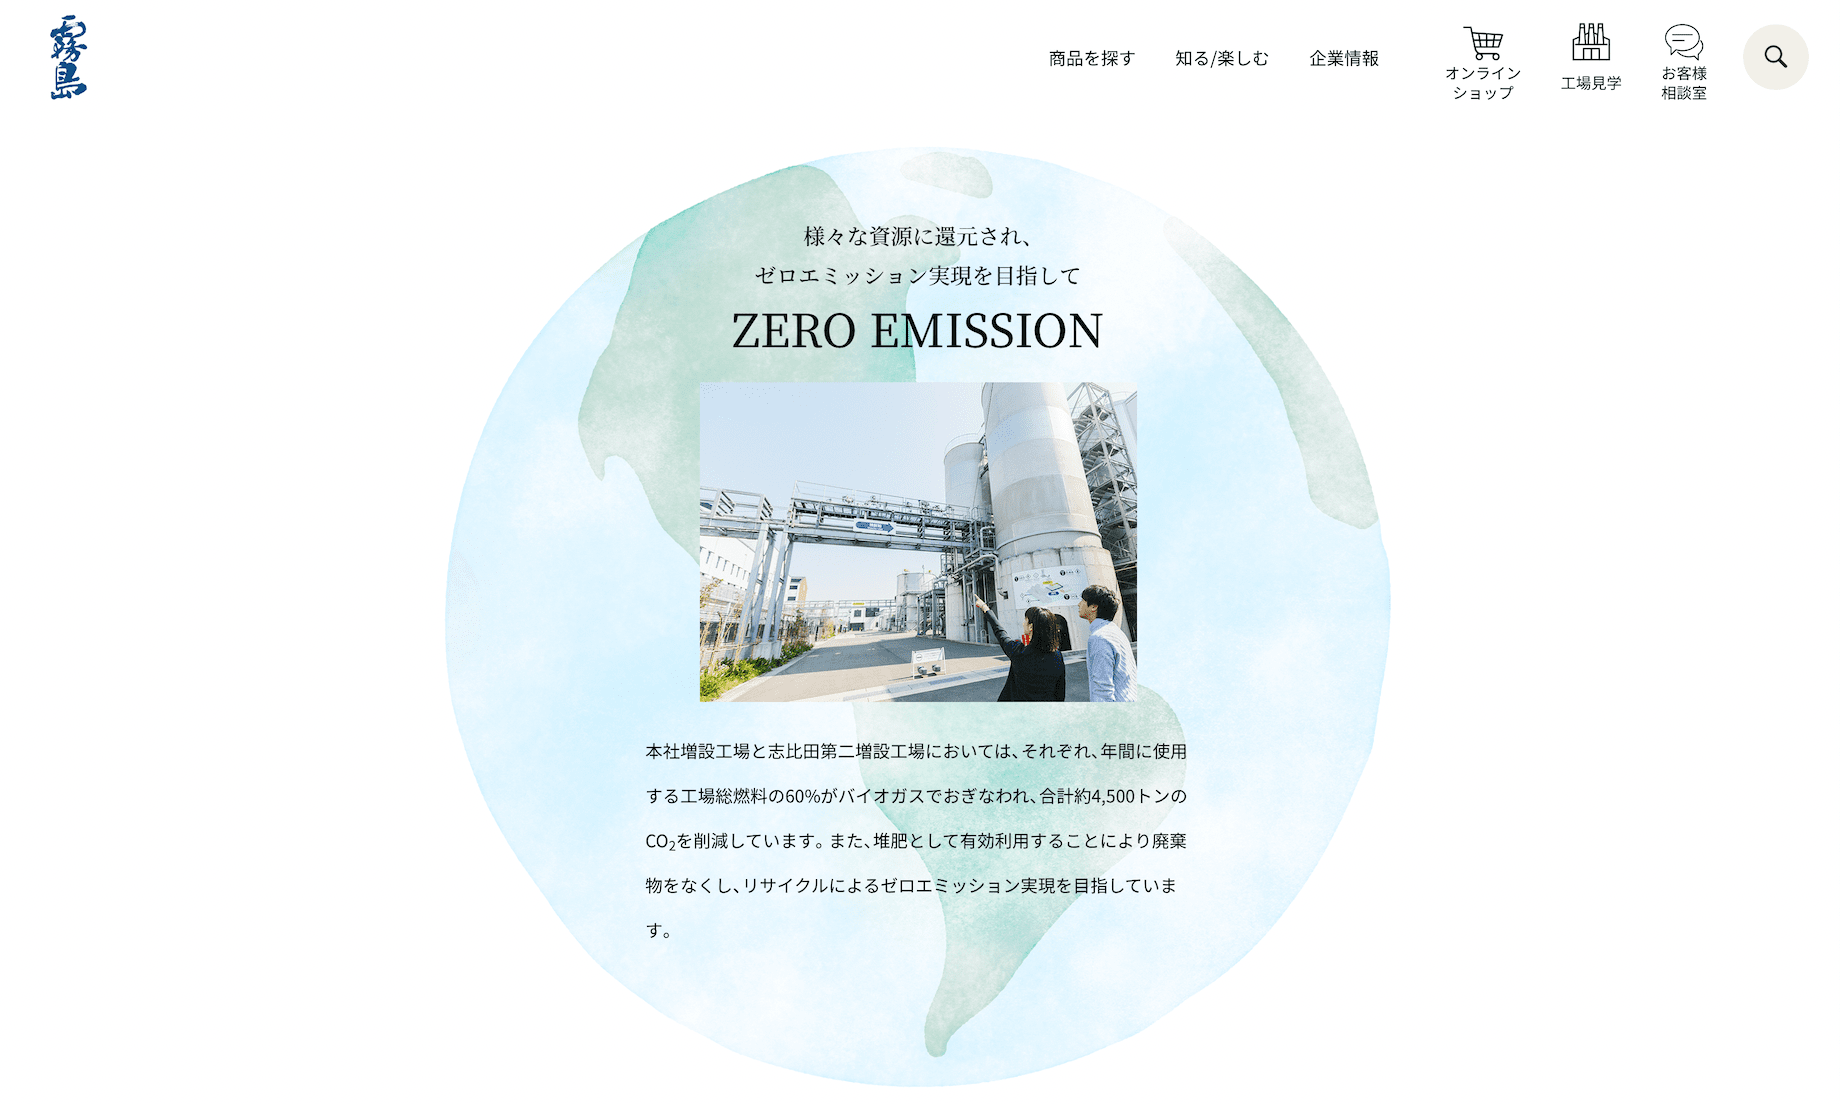 ゼロエミッション.&nbsp; &nbsp; &nbsp; &nbsp; &nbsp; &nbsp; &nbsp; https://www.kirishima.co.jp